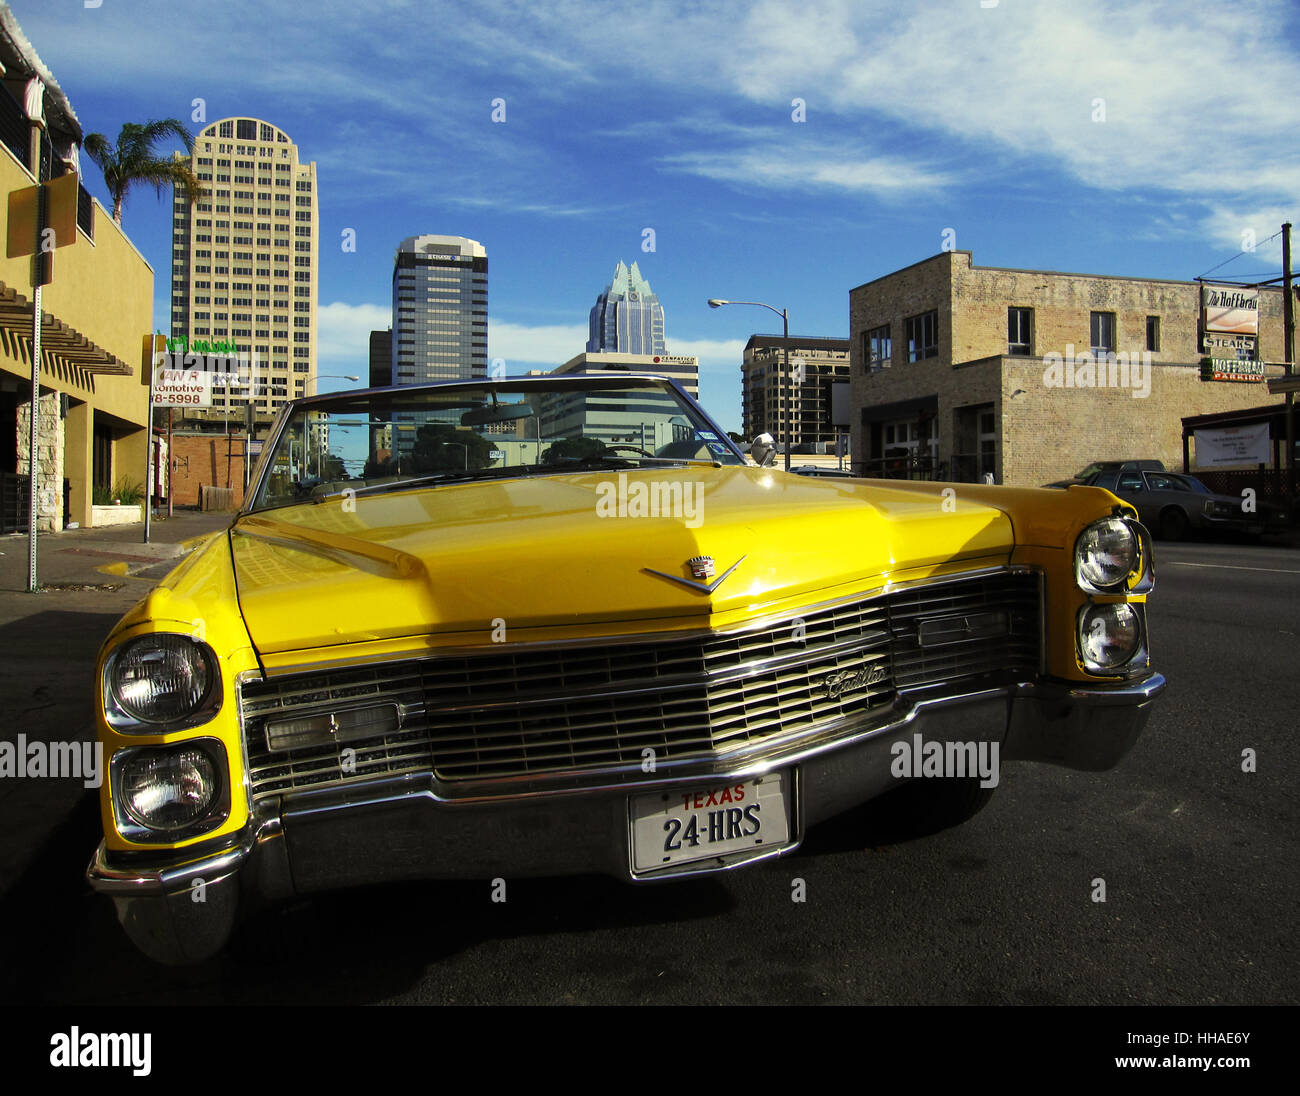 Una Cadillac gialla d'epoca parcheggiata sulla strada nel centro di Austin, Texas. Foto Stock